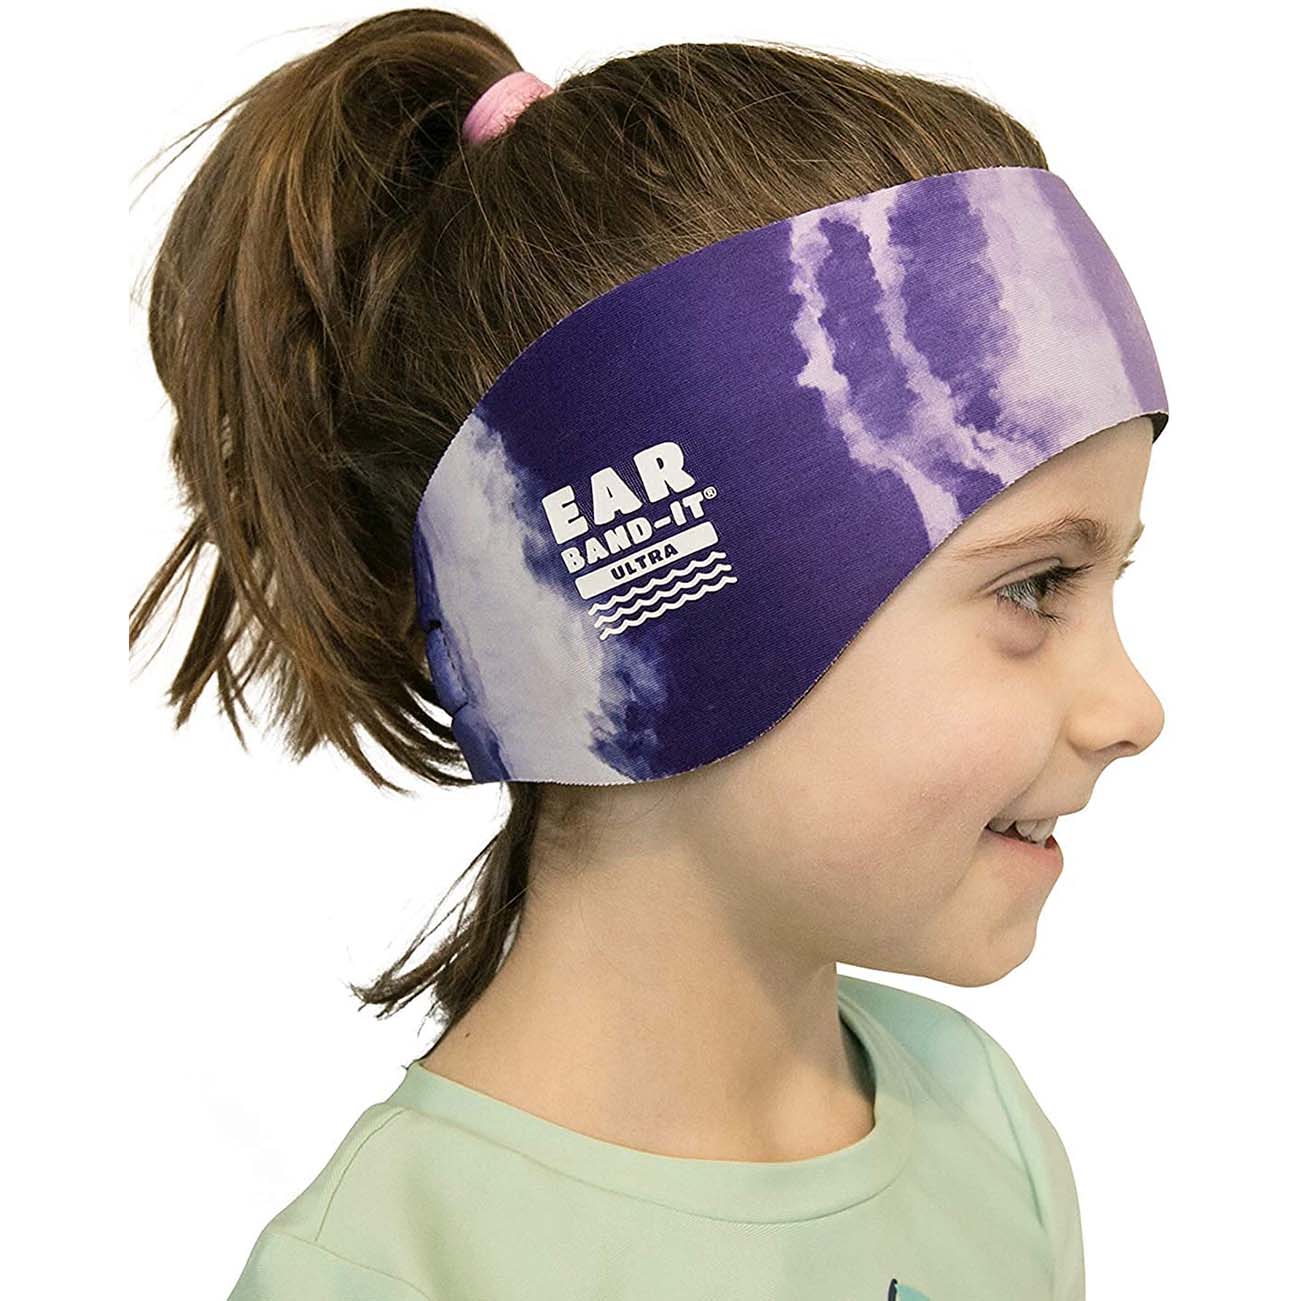 Ear Band-It Ultra Swimmer's Headband - Tie Dye Purple